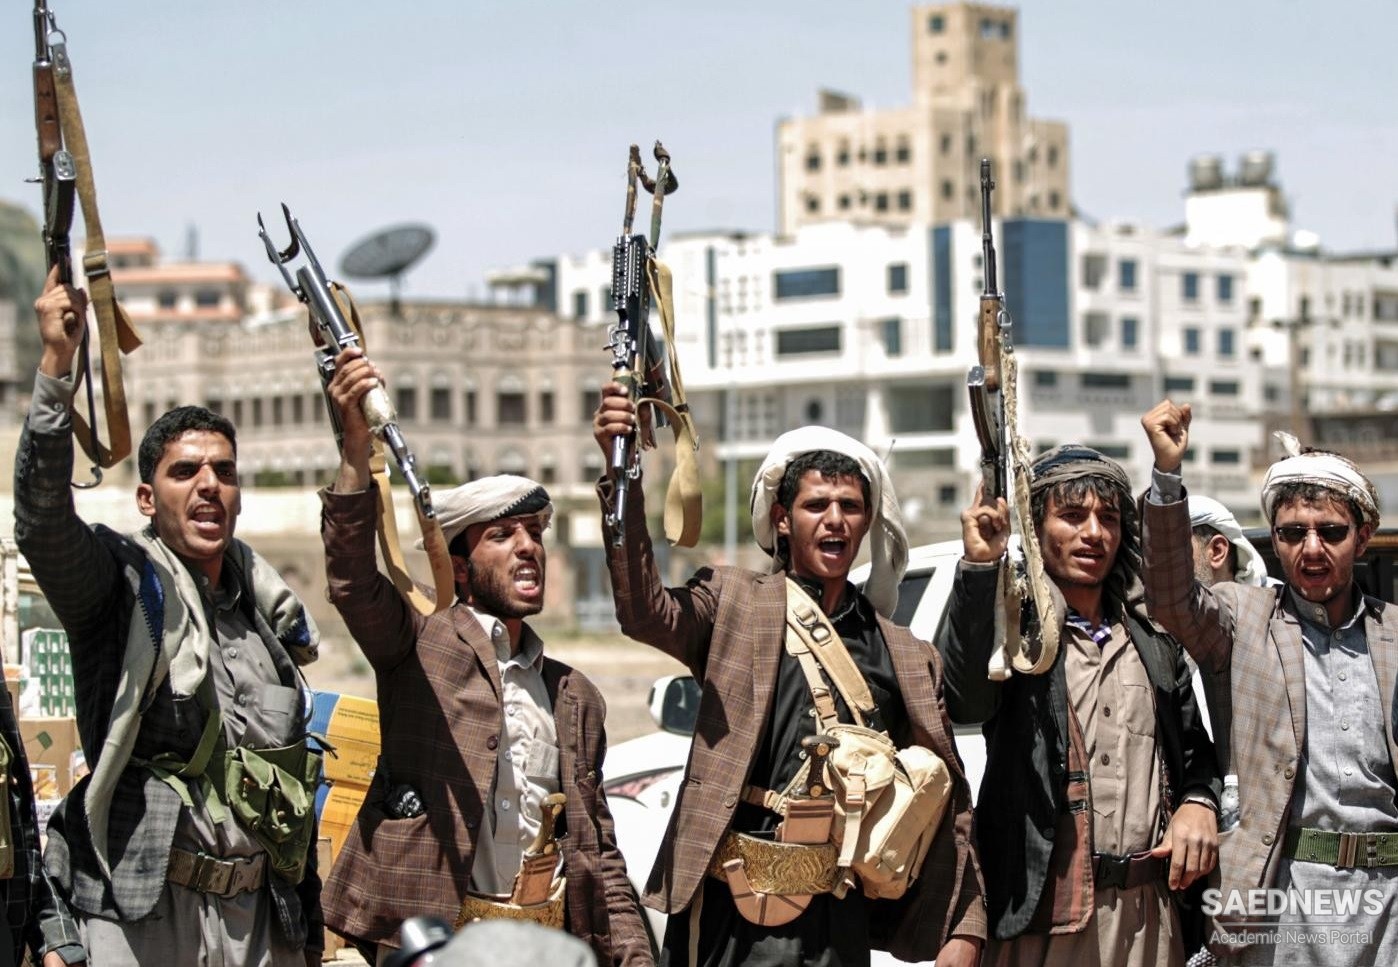 संयुक्त राज्य अमेरिका द्वारा यमन के हौथी प्रतिरोध मोर्चा को आतंकवादी समूह के रूप में सूचीबद्ध किया गया